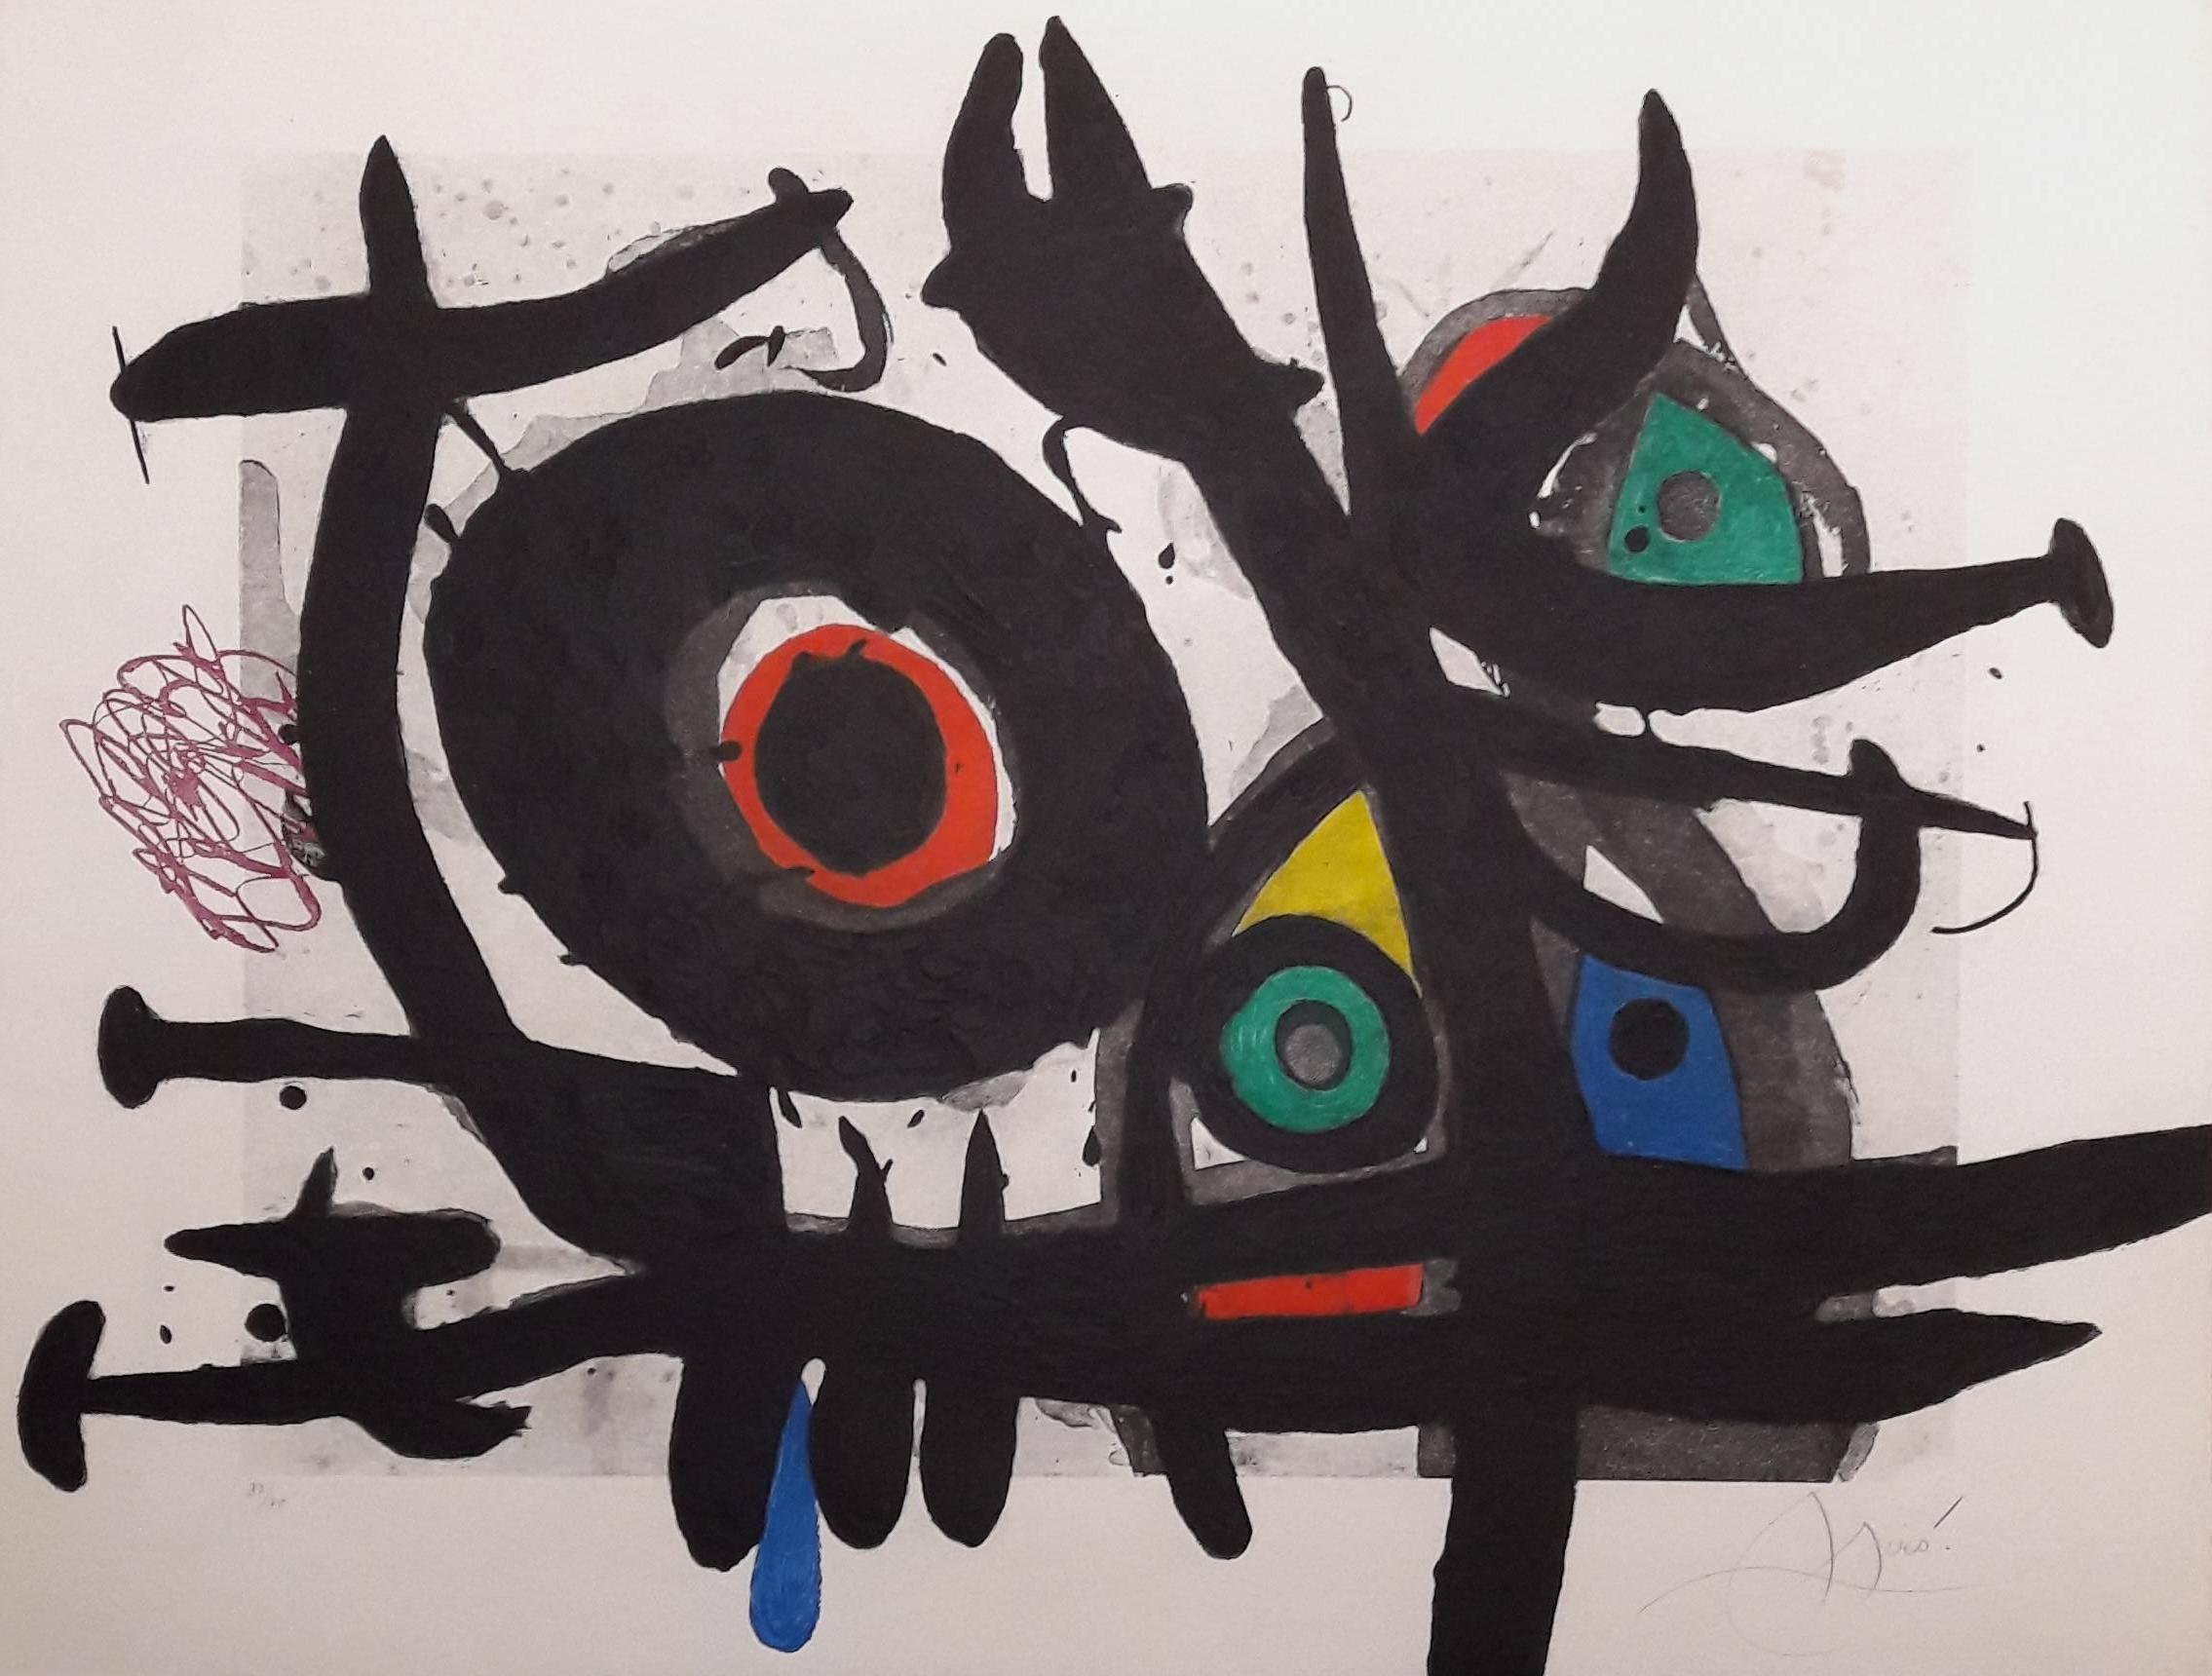 Joan Miró Abstract Print - L'Oiseau Destructeur (The Destructive Bird) - Original Etching Handsigned 